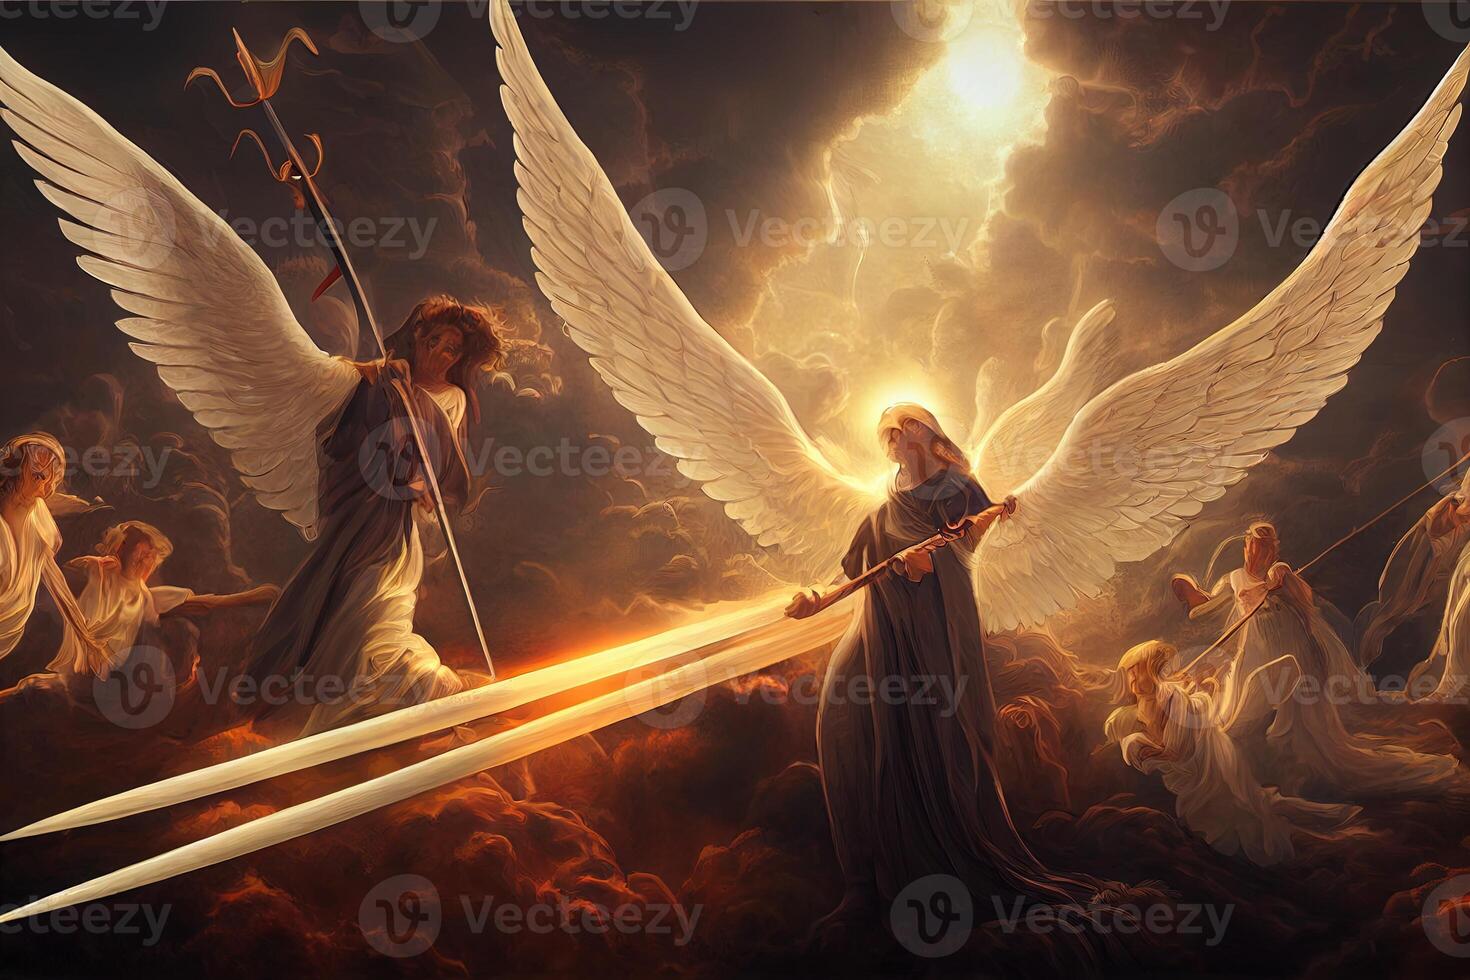 illustration av änglar i himmel foto